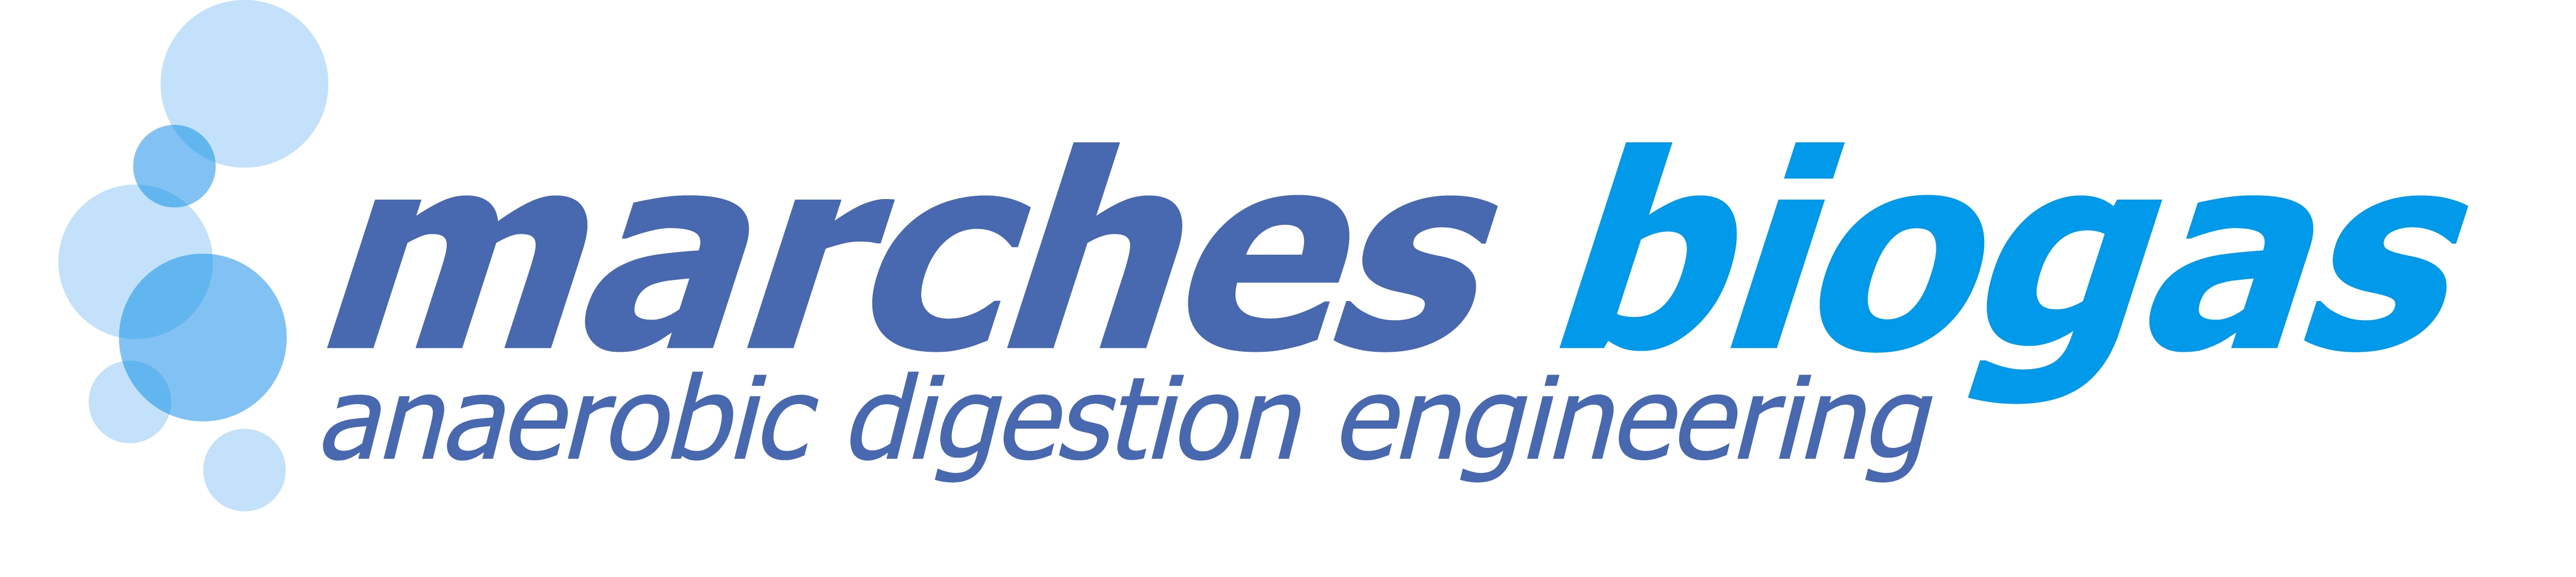 Organisation Logo - Marches Biogas Ltd